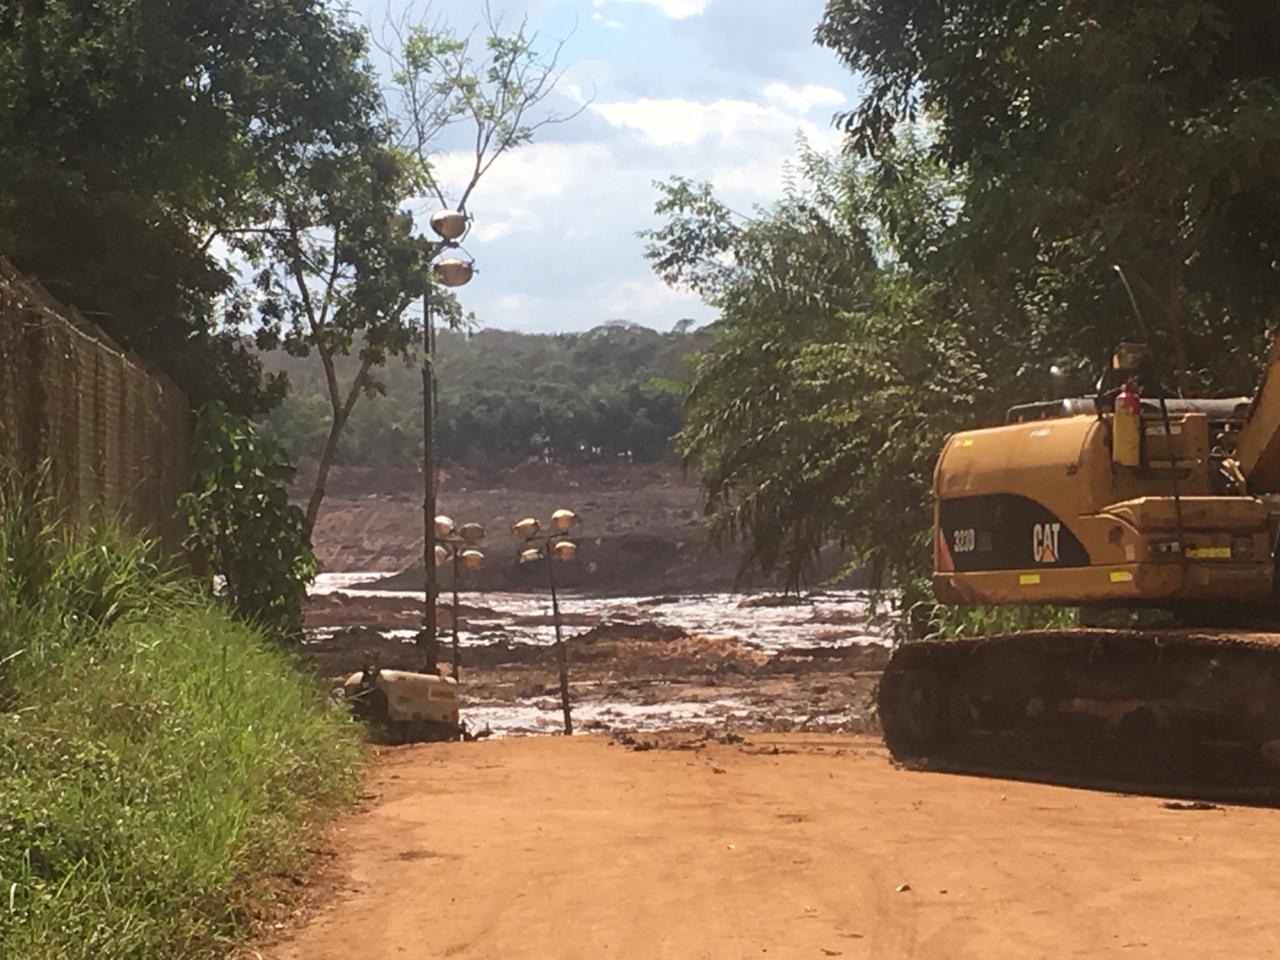 Missão da Conectas está em Brumadinho (MG) acompanhando as ações emergenciais das autoridades e da Vale após o rompimento da barragem de rejeitos minerais da Vale (foto: Conectas)